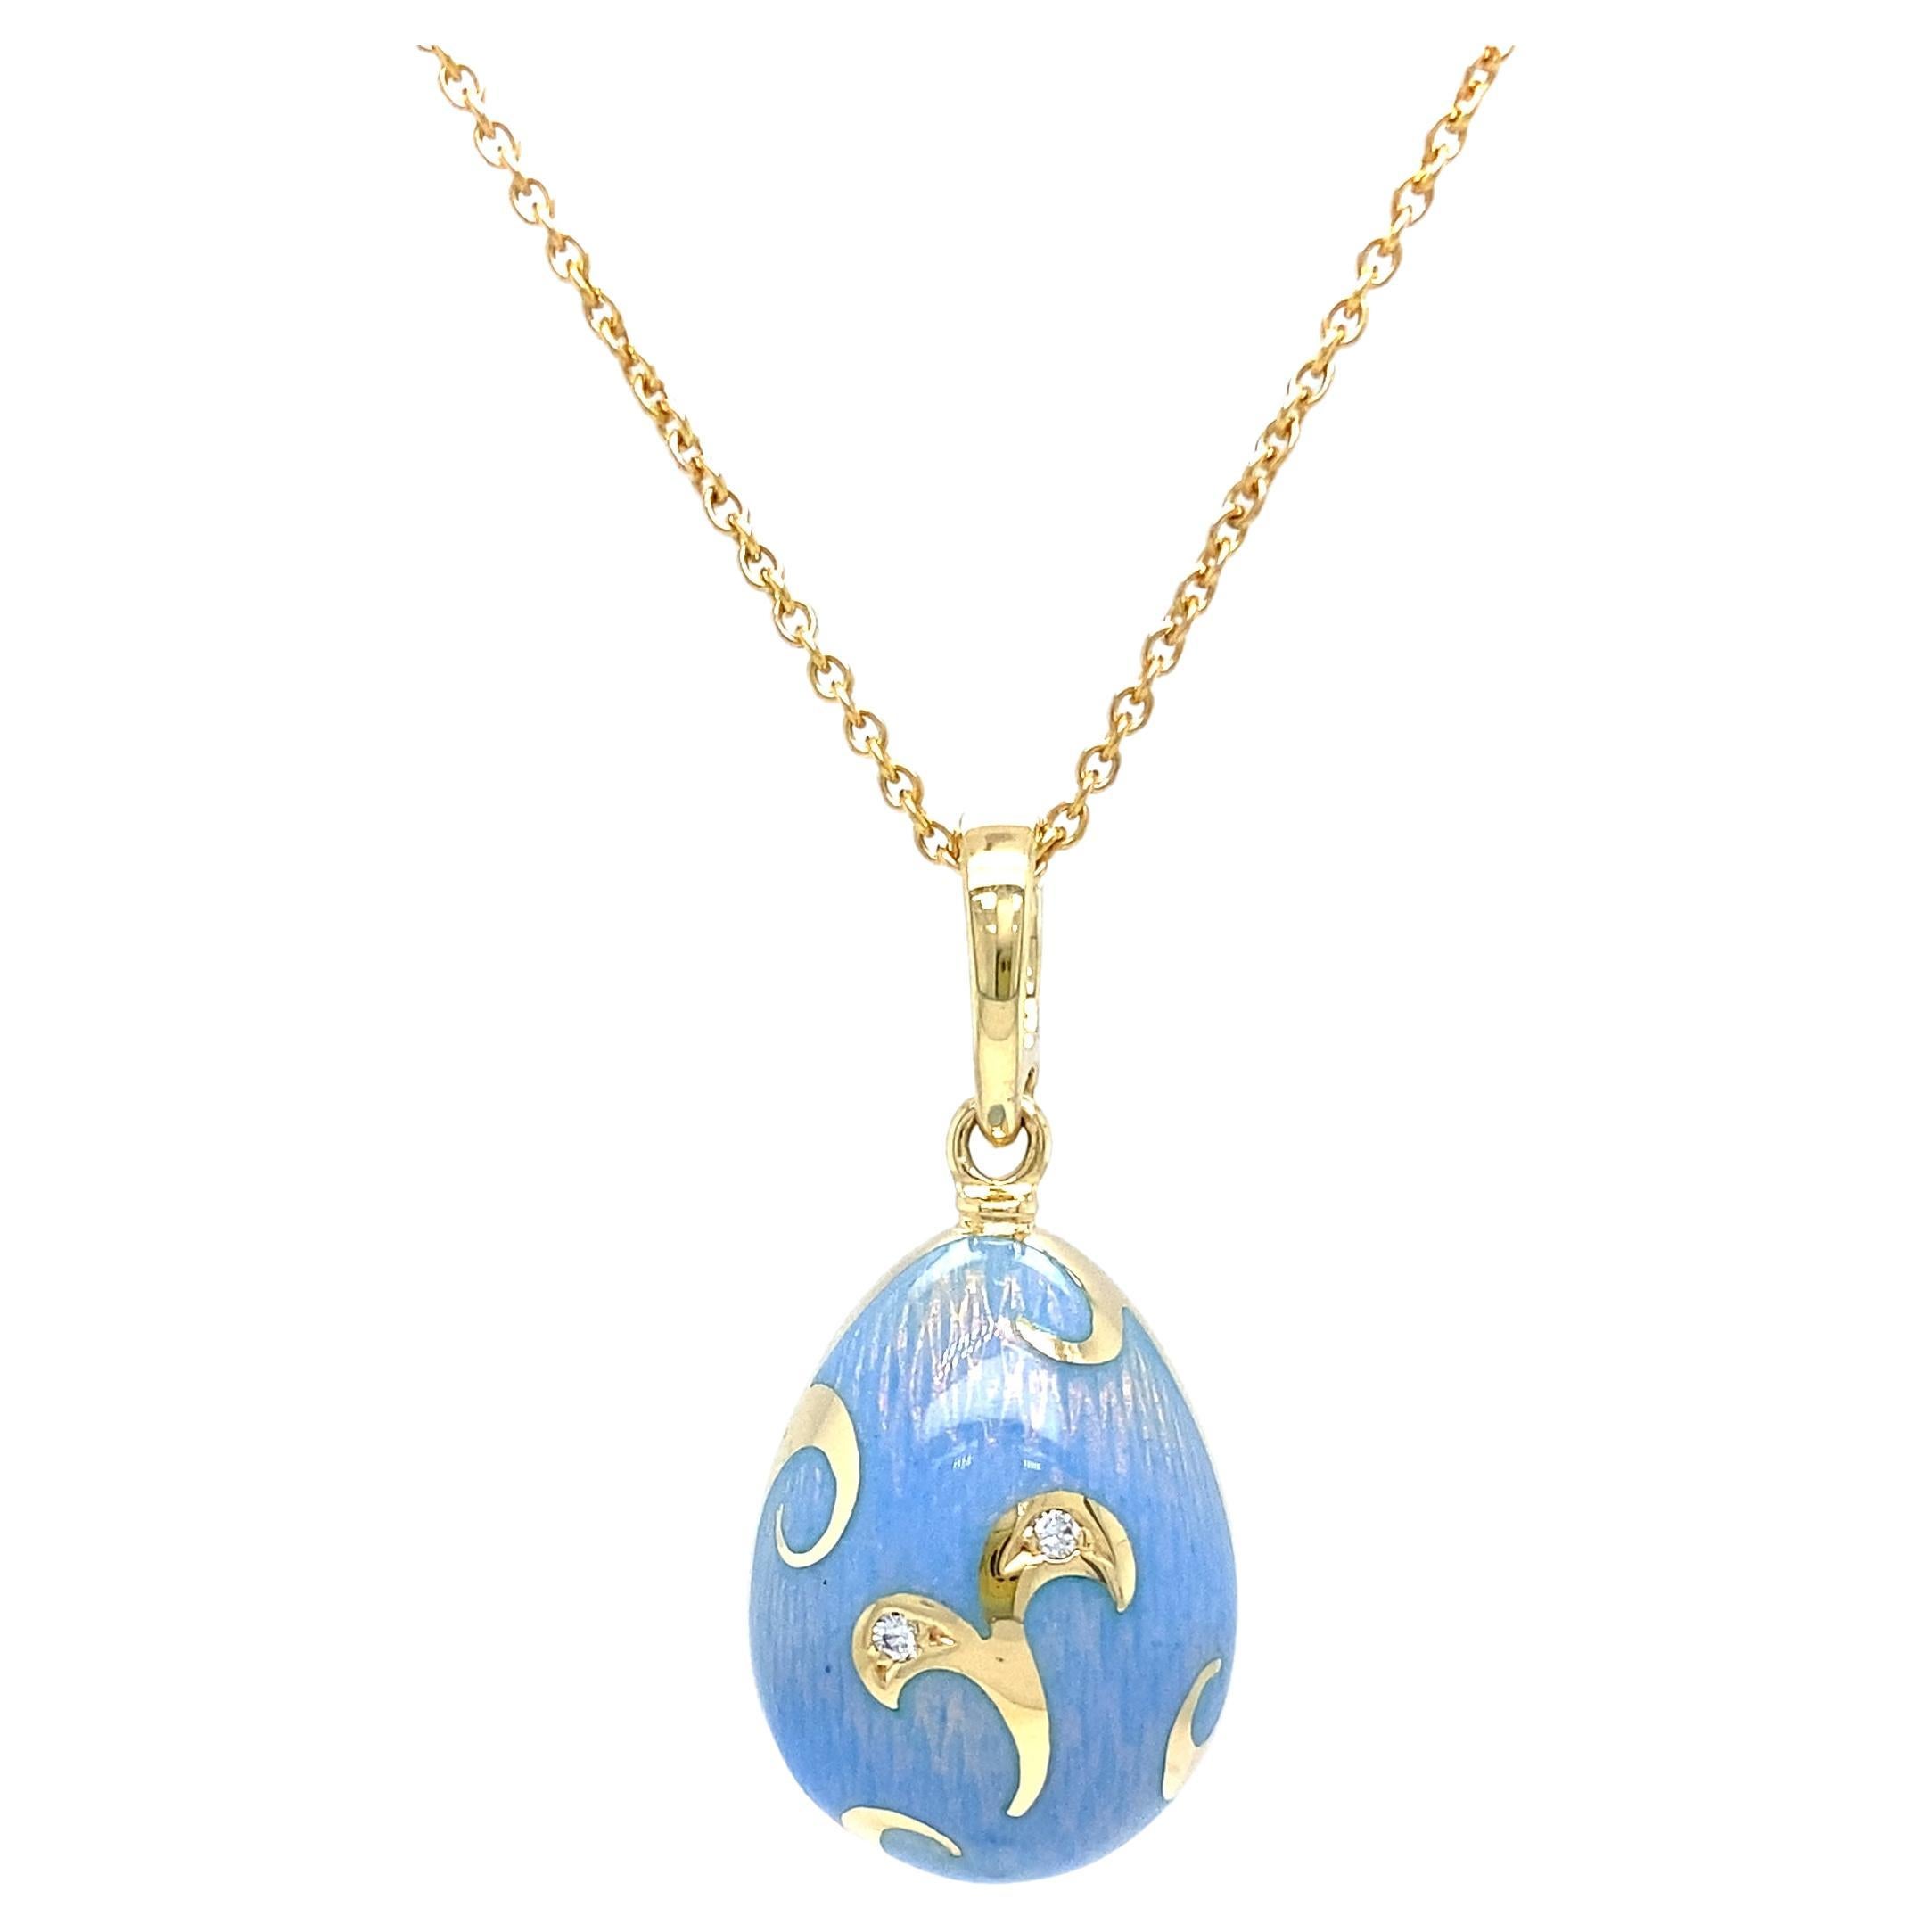 Fabergé Egg Pendant Blue Opalescent Enamel 18k Yellow Gold 2 Diamonds Rocaille